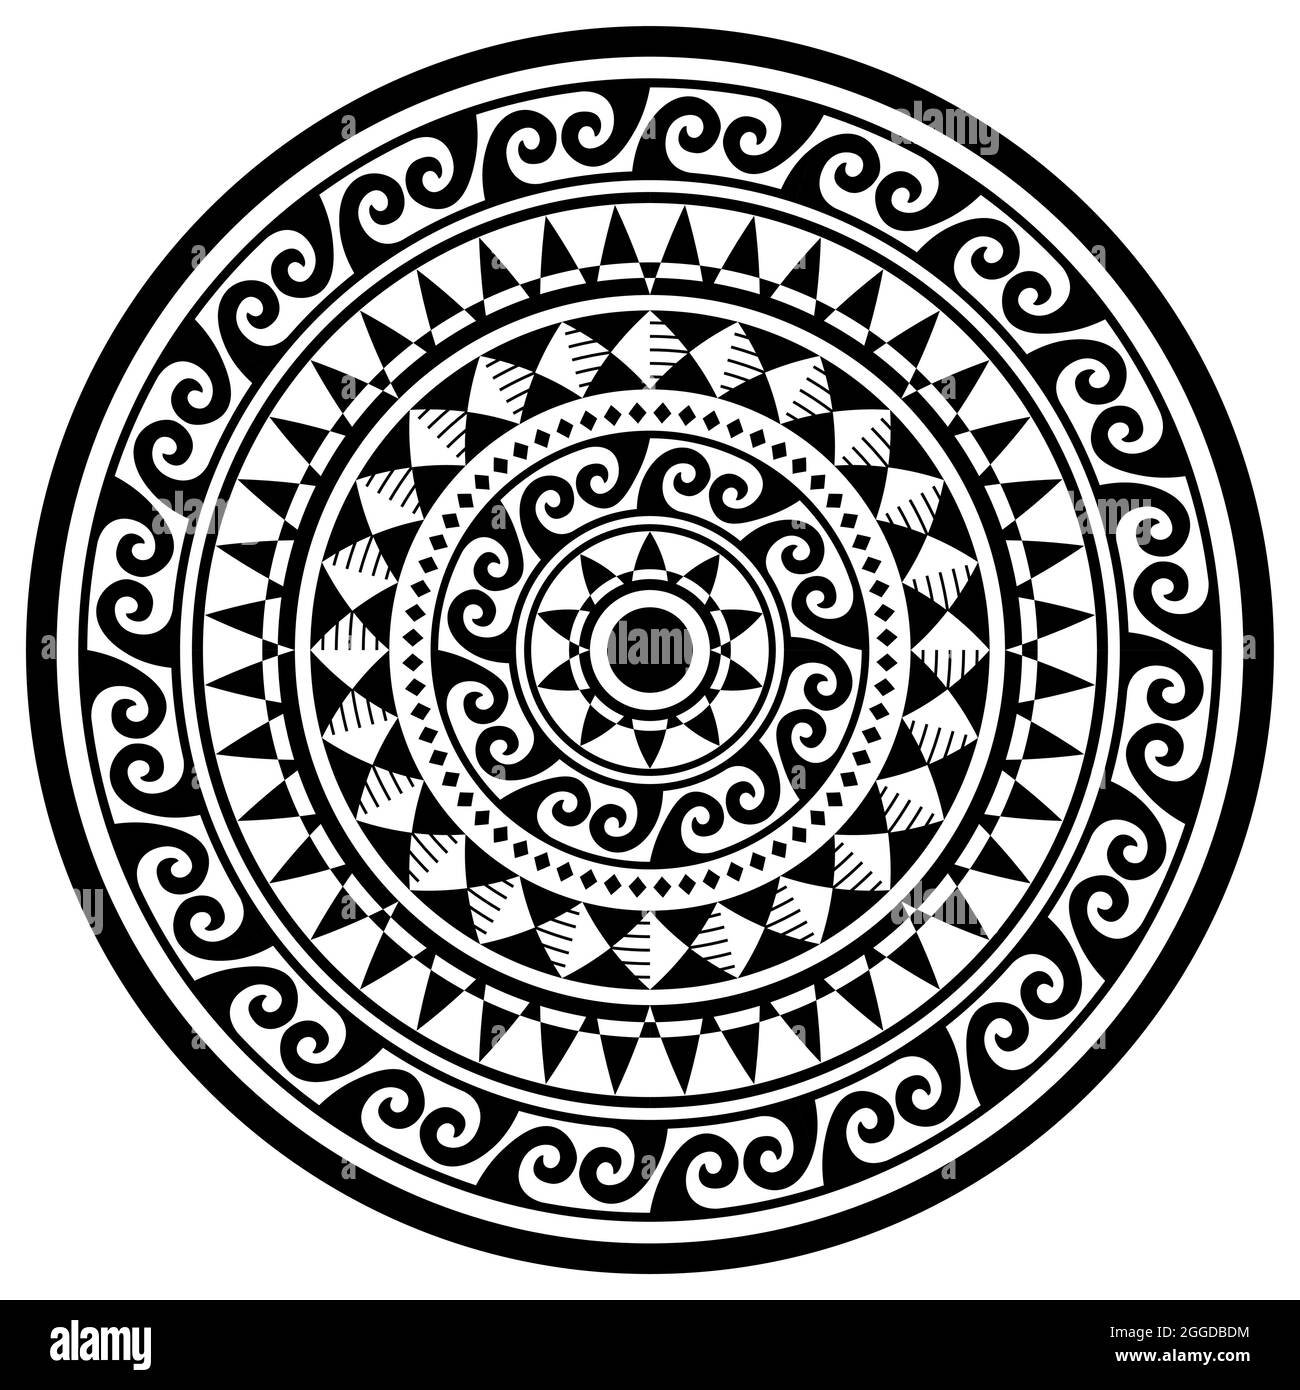 Motif géométrique polynésien de style mandala, motif tribal hawaïen avec vagues et ornement géométrique noir et blanc Illustration de Vecteur